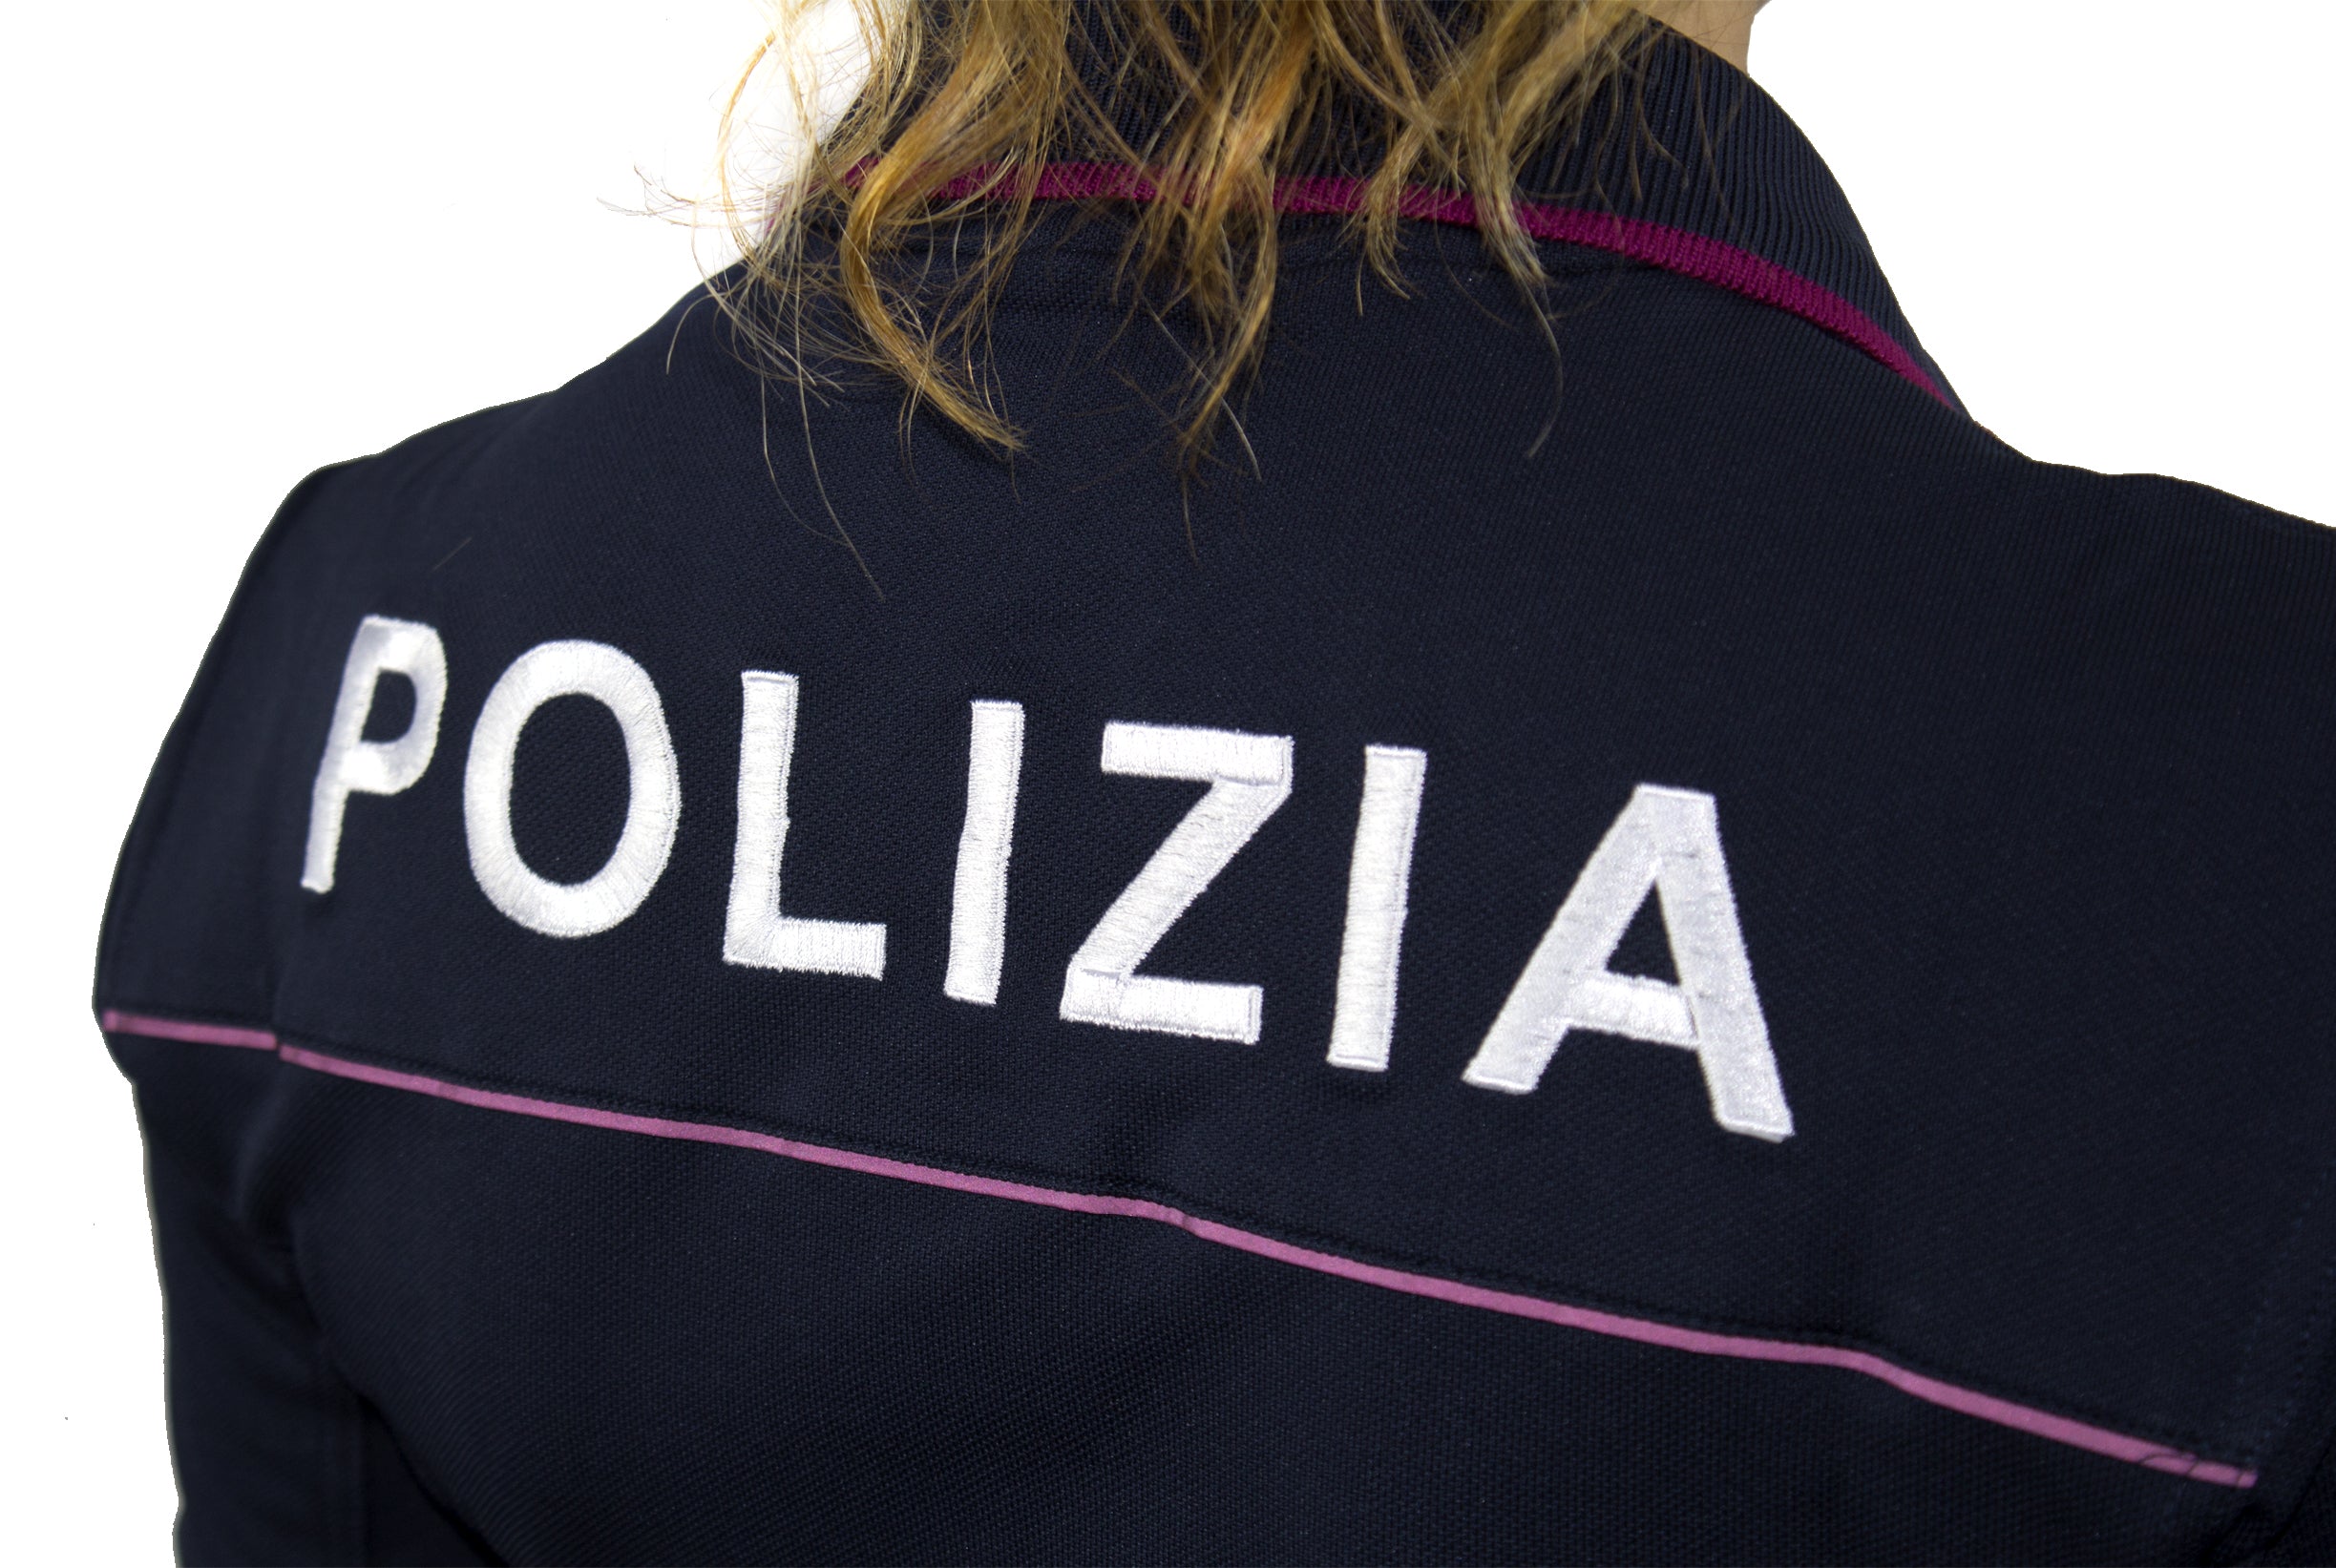 Police Polo Woman